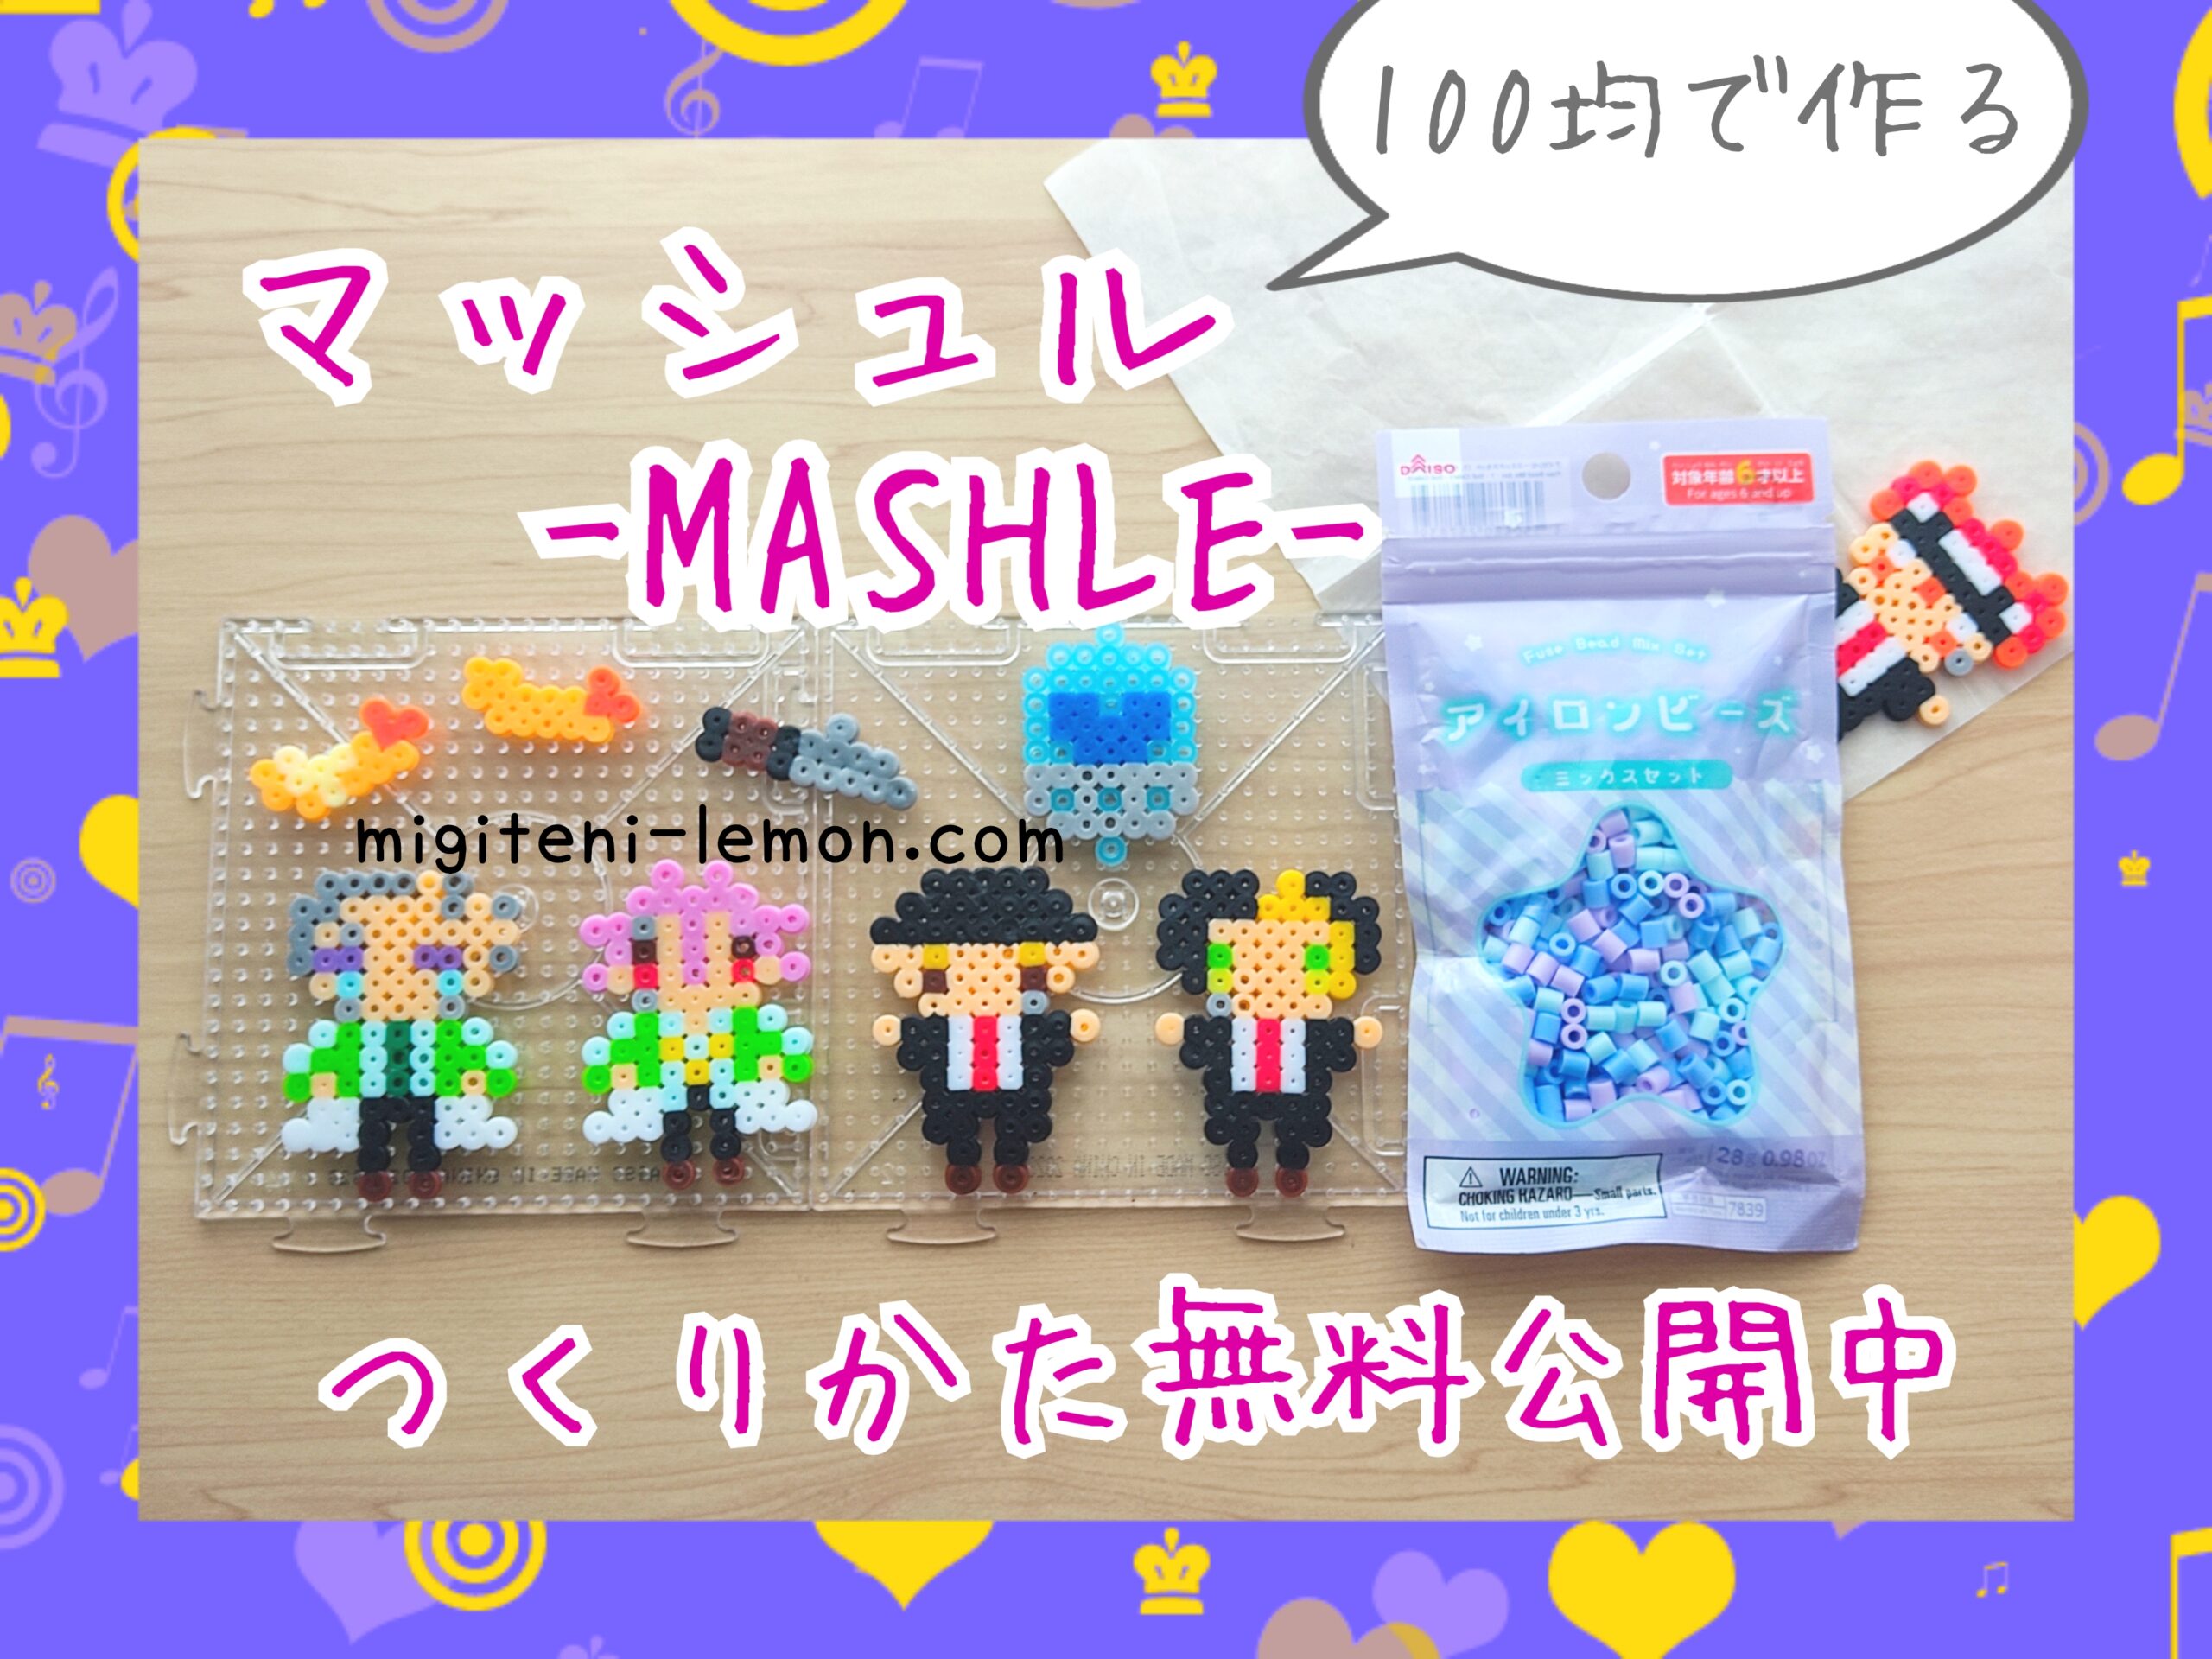 mashle-handmade-beads-character-daiso-8